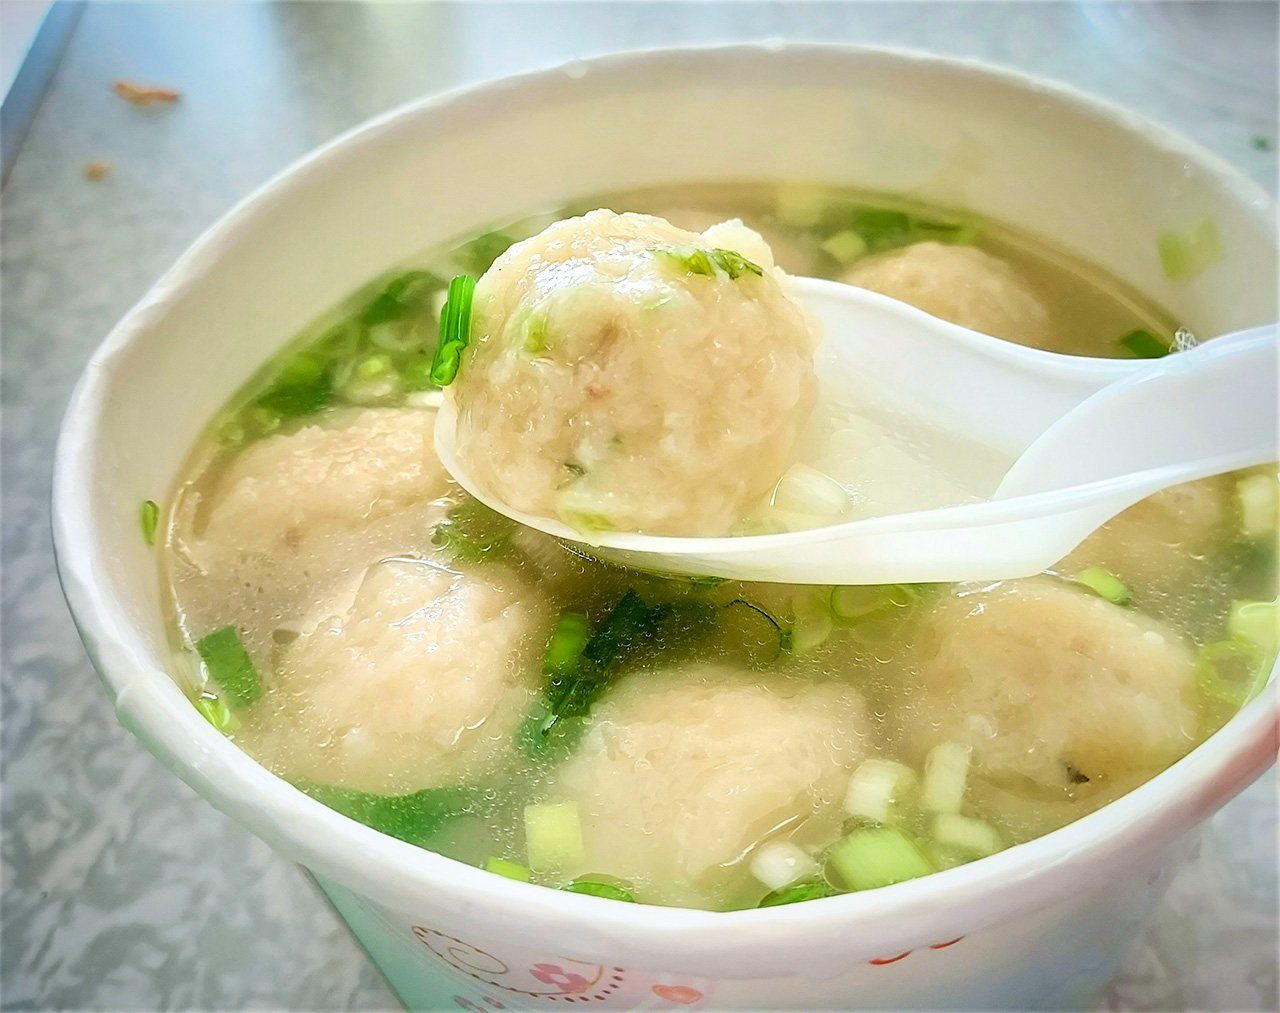 馬祖的福州魚丸湯